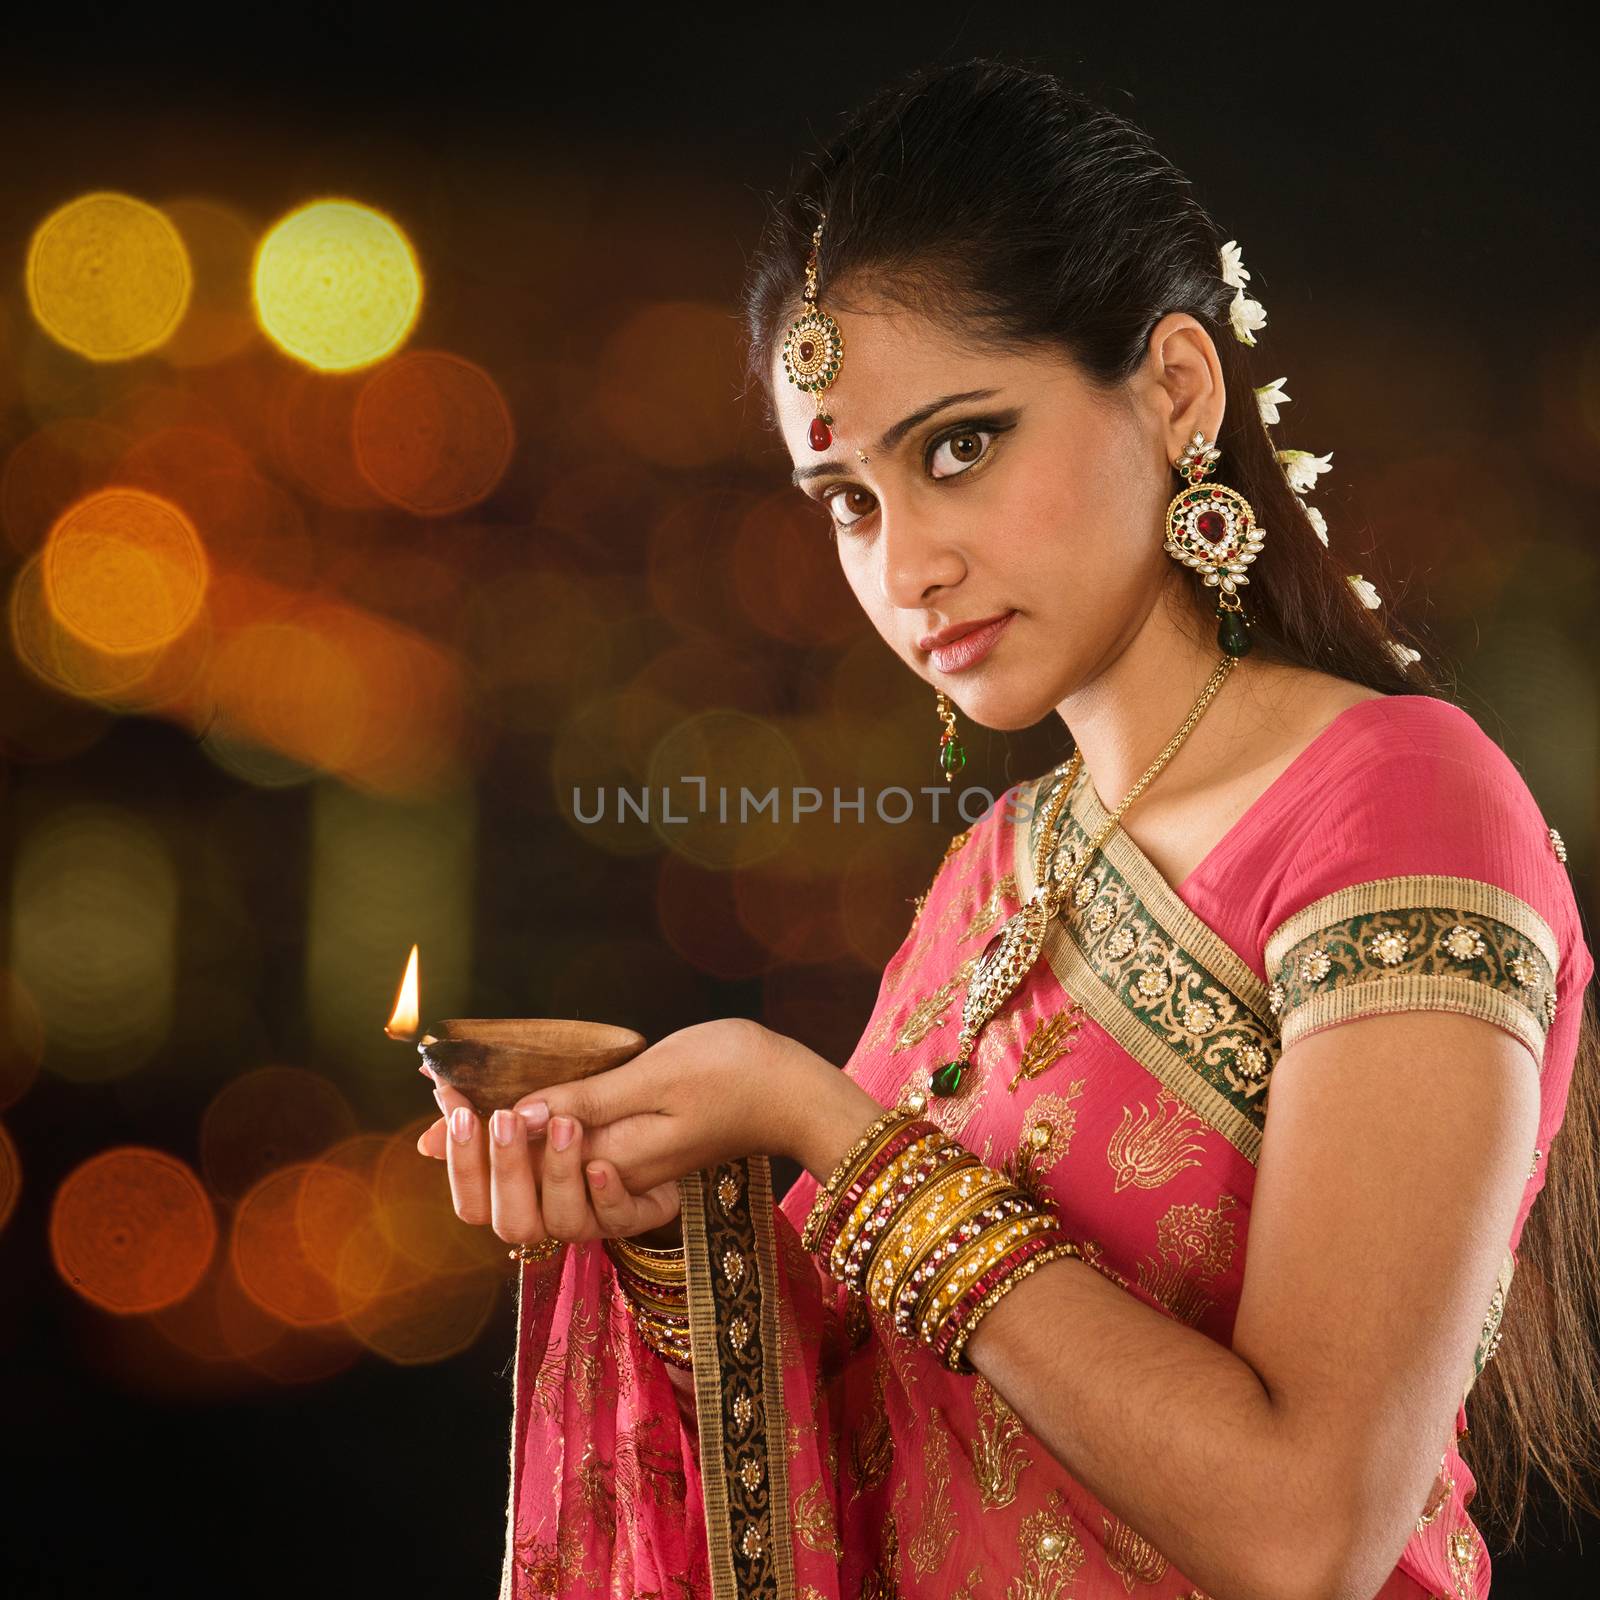 Indian girl hands holding diya lights by szefei